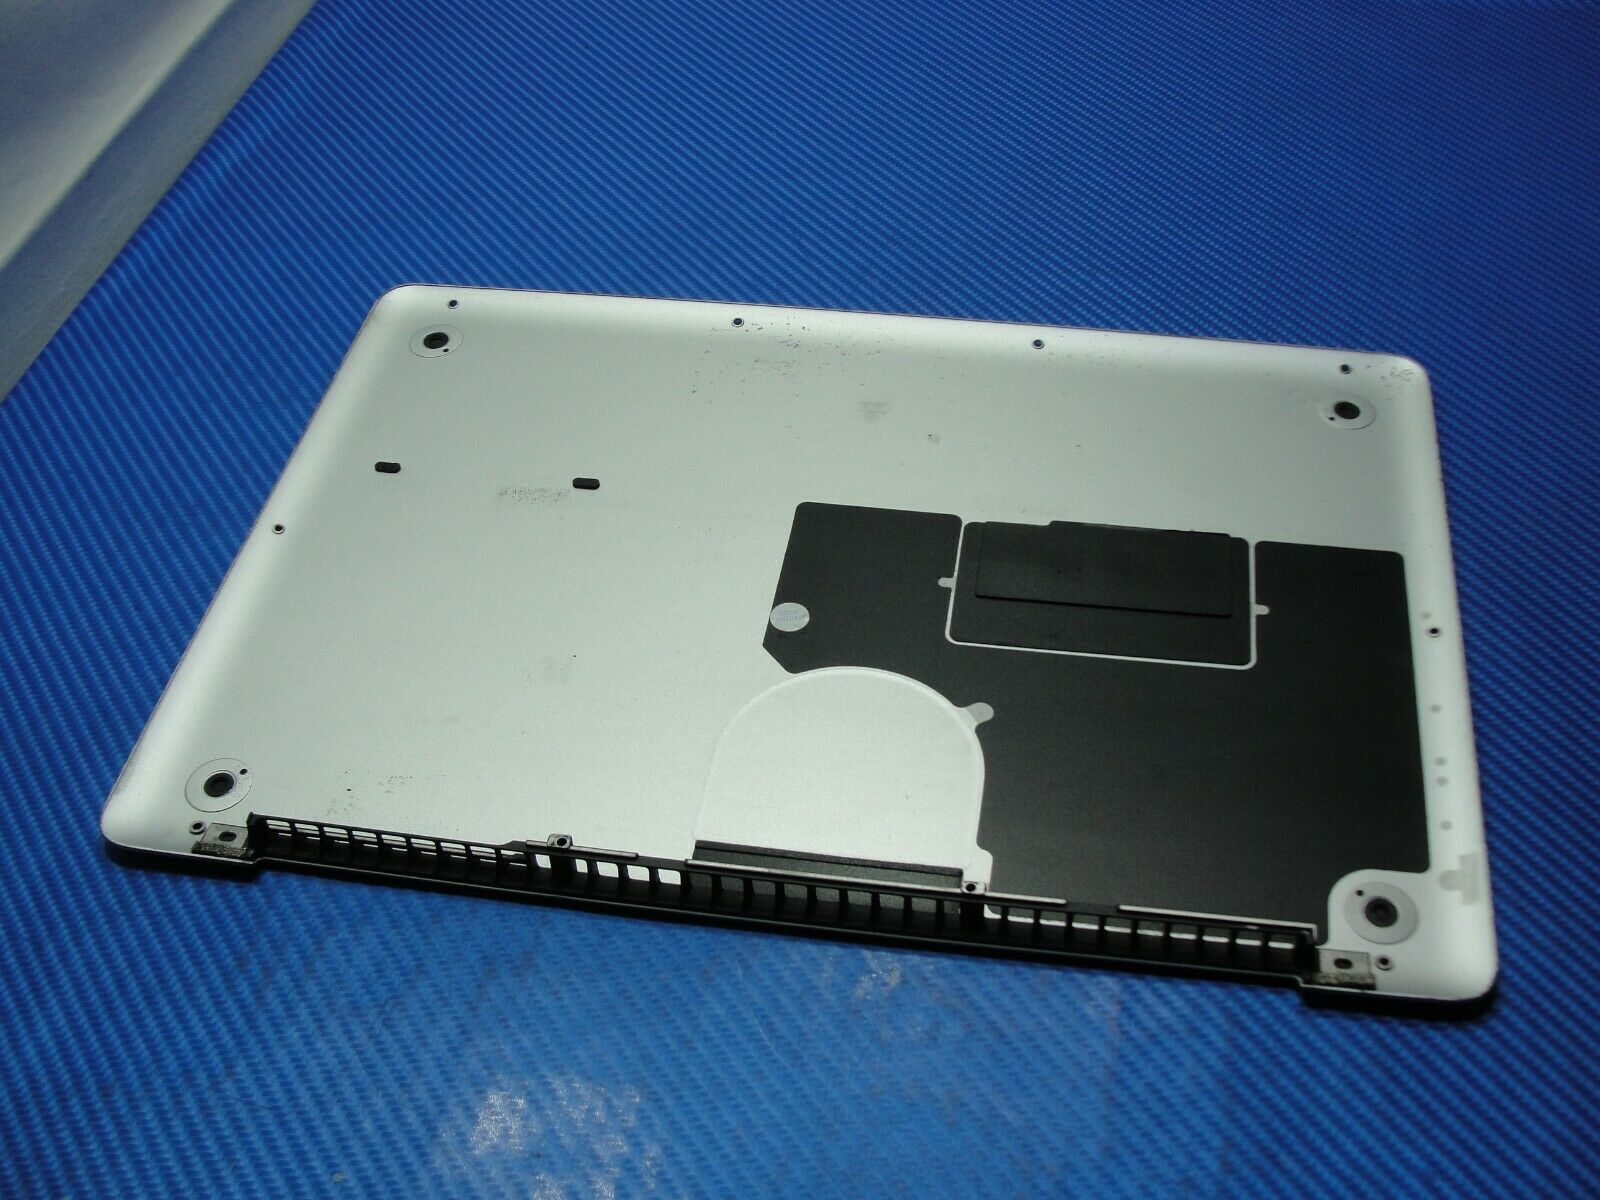 MacBook Pro A1278 MD101LL/A Mid 2012 13